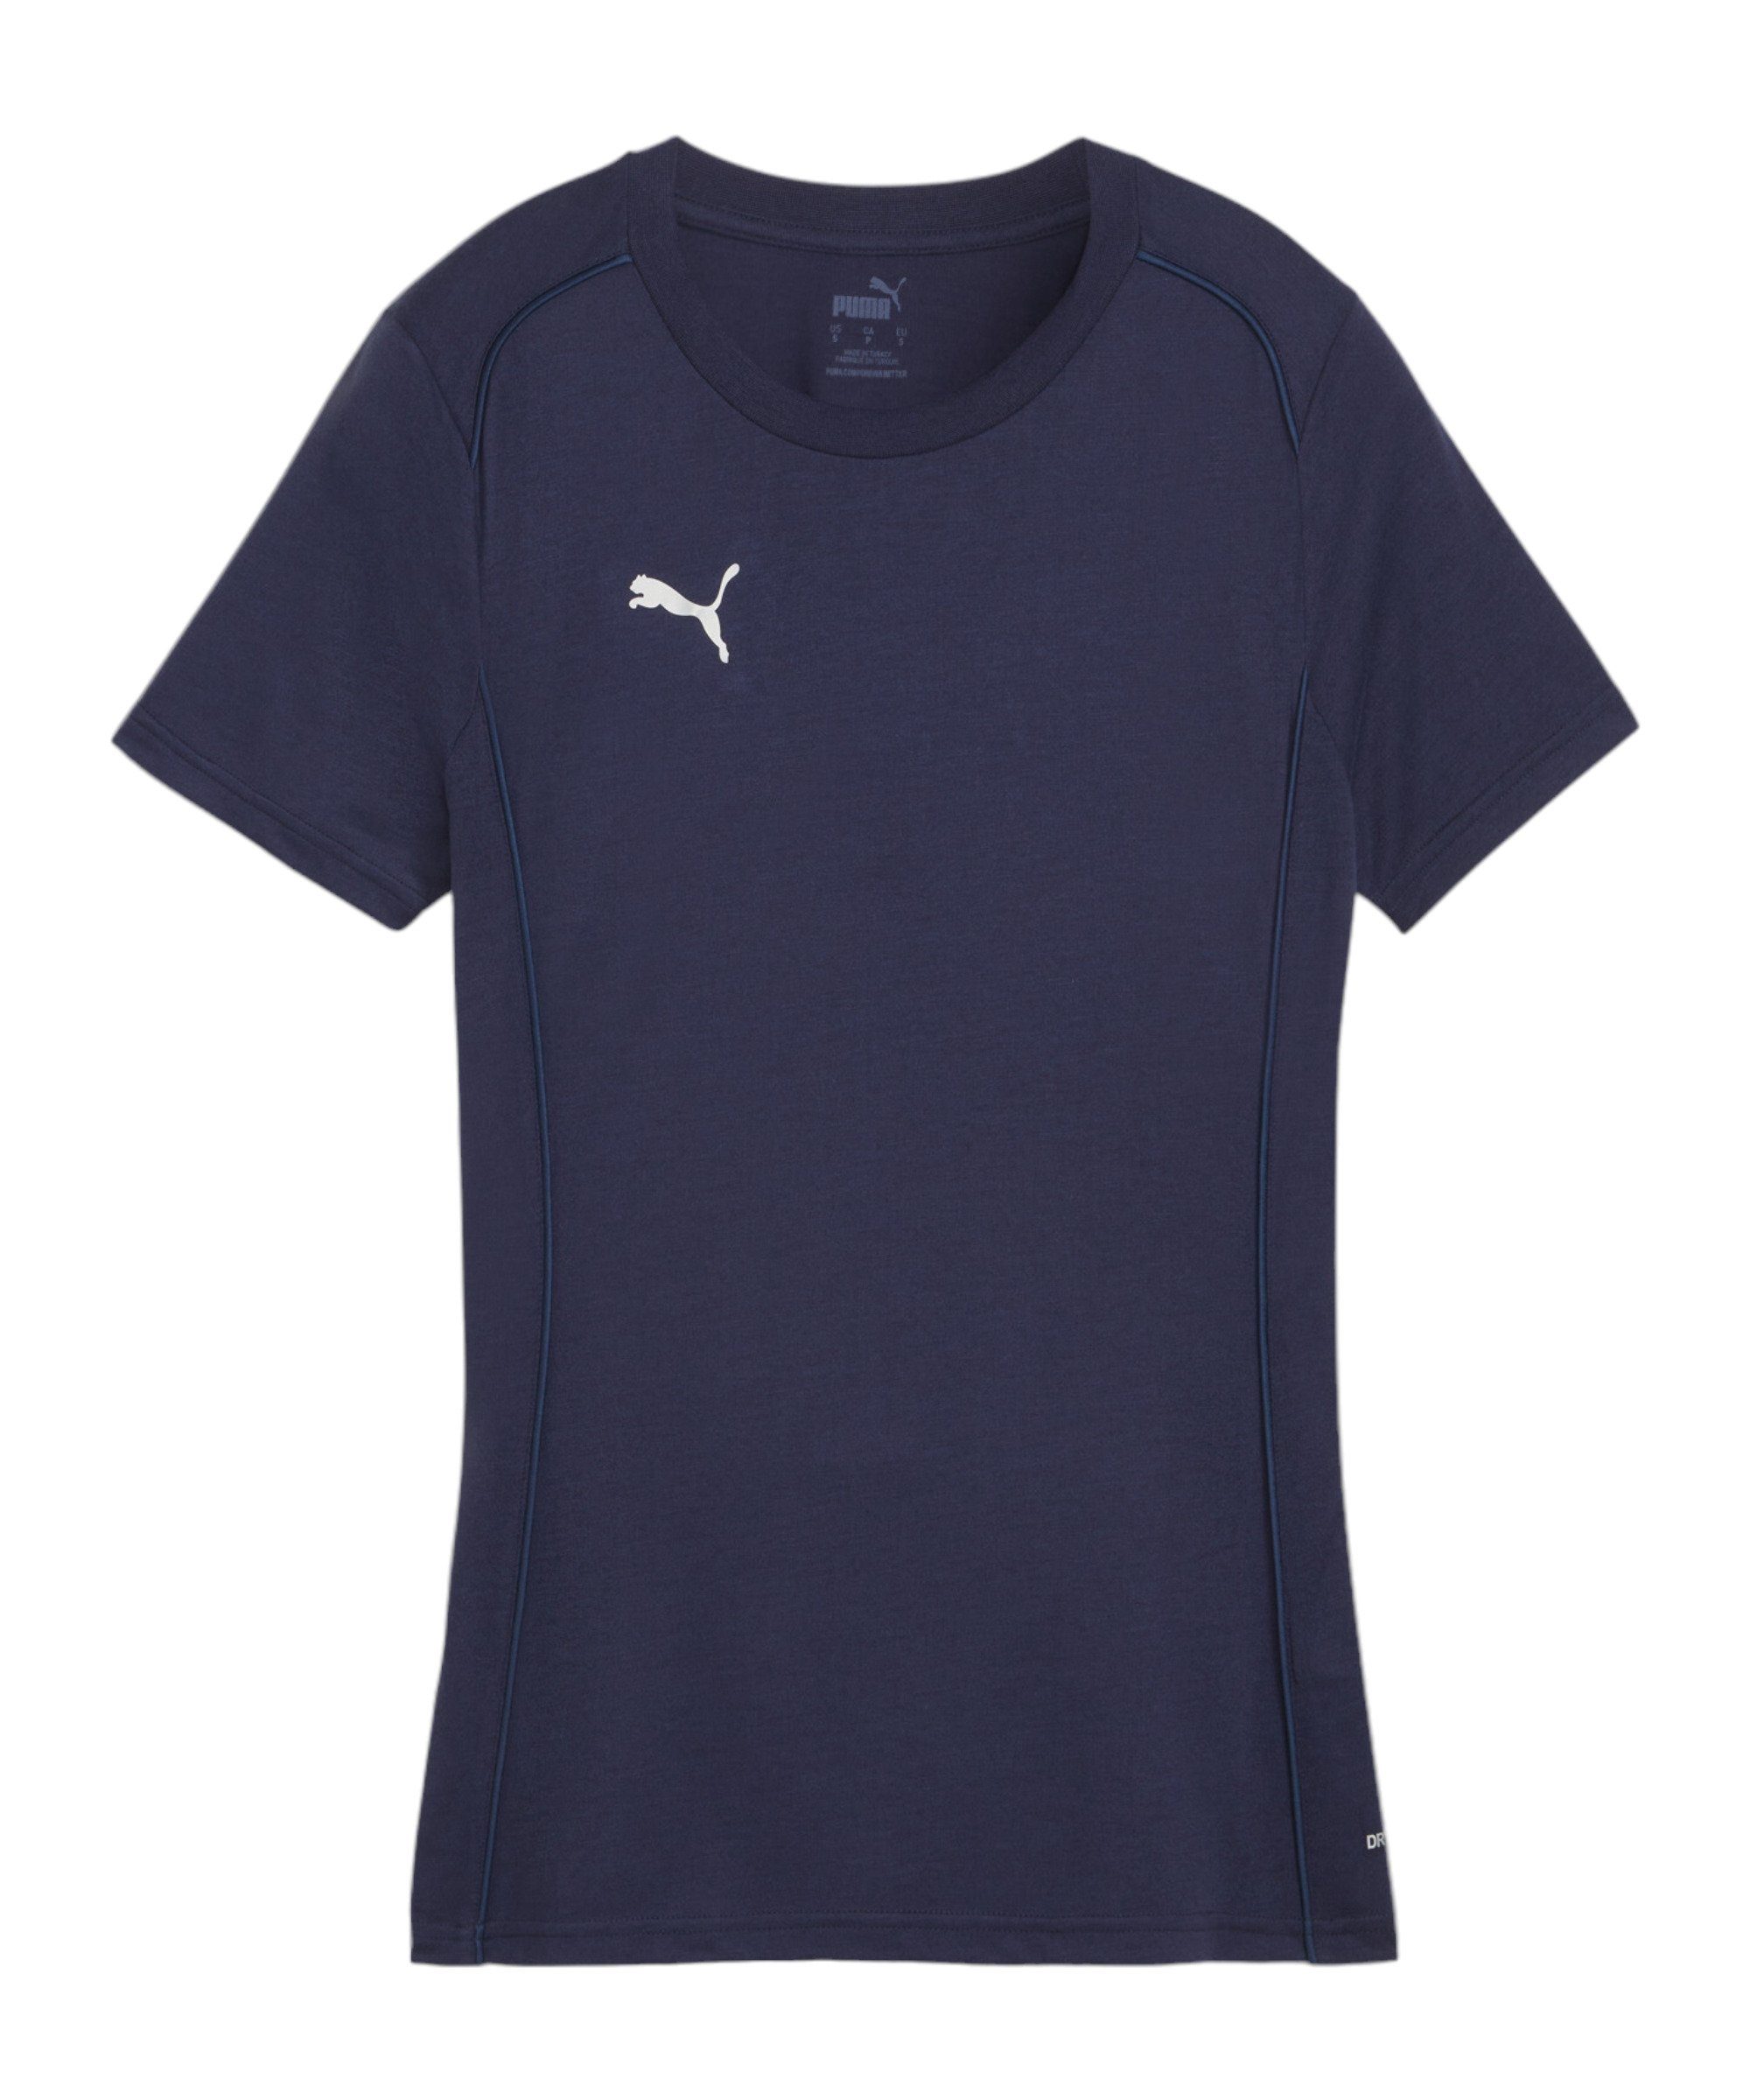 PUMA Sporthose teamFINAL Casuals T-Shirt Damen